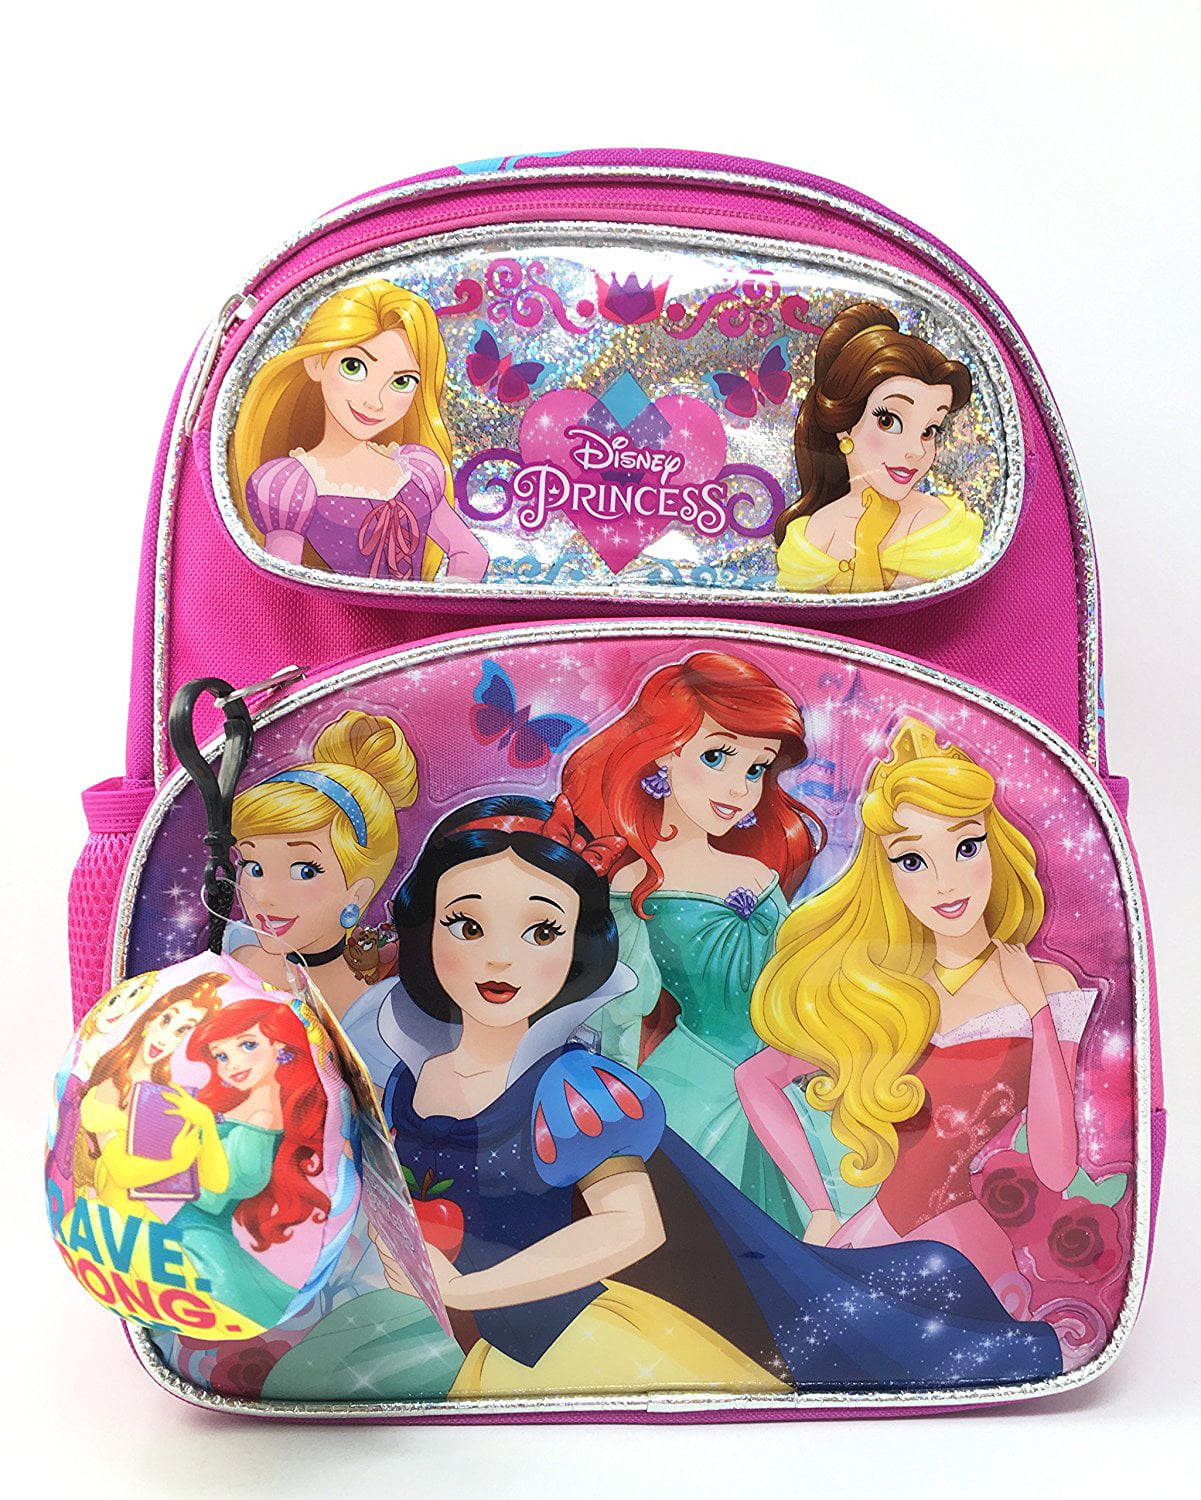 Belle Rapunzel Disney Princess Rectangular Shoulder Bag Cinderella 